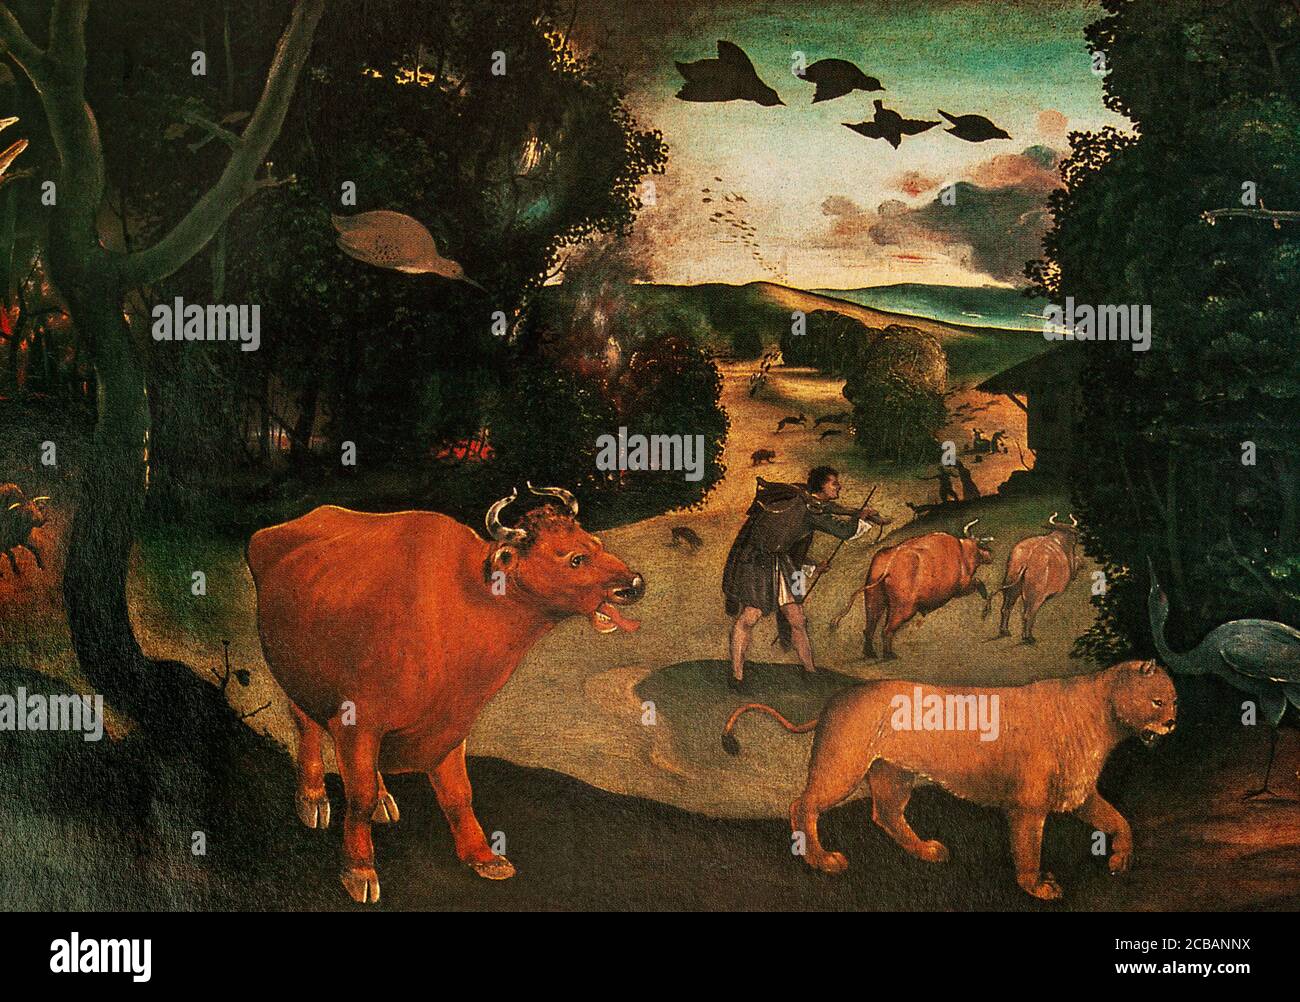 Aus c. 1505, 'A Forest Fire' von Piero di Cosimo (1462-1522), einem Maler der Renaissance. Er ist vor allem für die mythologischen und allegorischen Themen bekannt, die er im späten Quattrocento (1400-1499) malte. Allerdings hatte der Hochrenaissance-Stil des neuen Jahrhunderts wenig Einfluss auf ihn, und er behielt den direkten Realismus seiner Figuren, die sich mit einer oft skurrilen Behandlung seiner Themen zu schaffen, die unverwechselbare Stimmung seiner Werke. Stockfoto